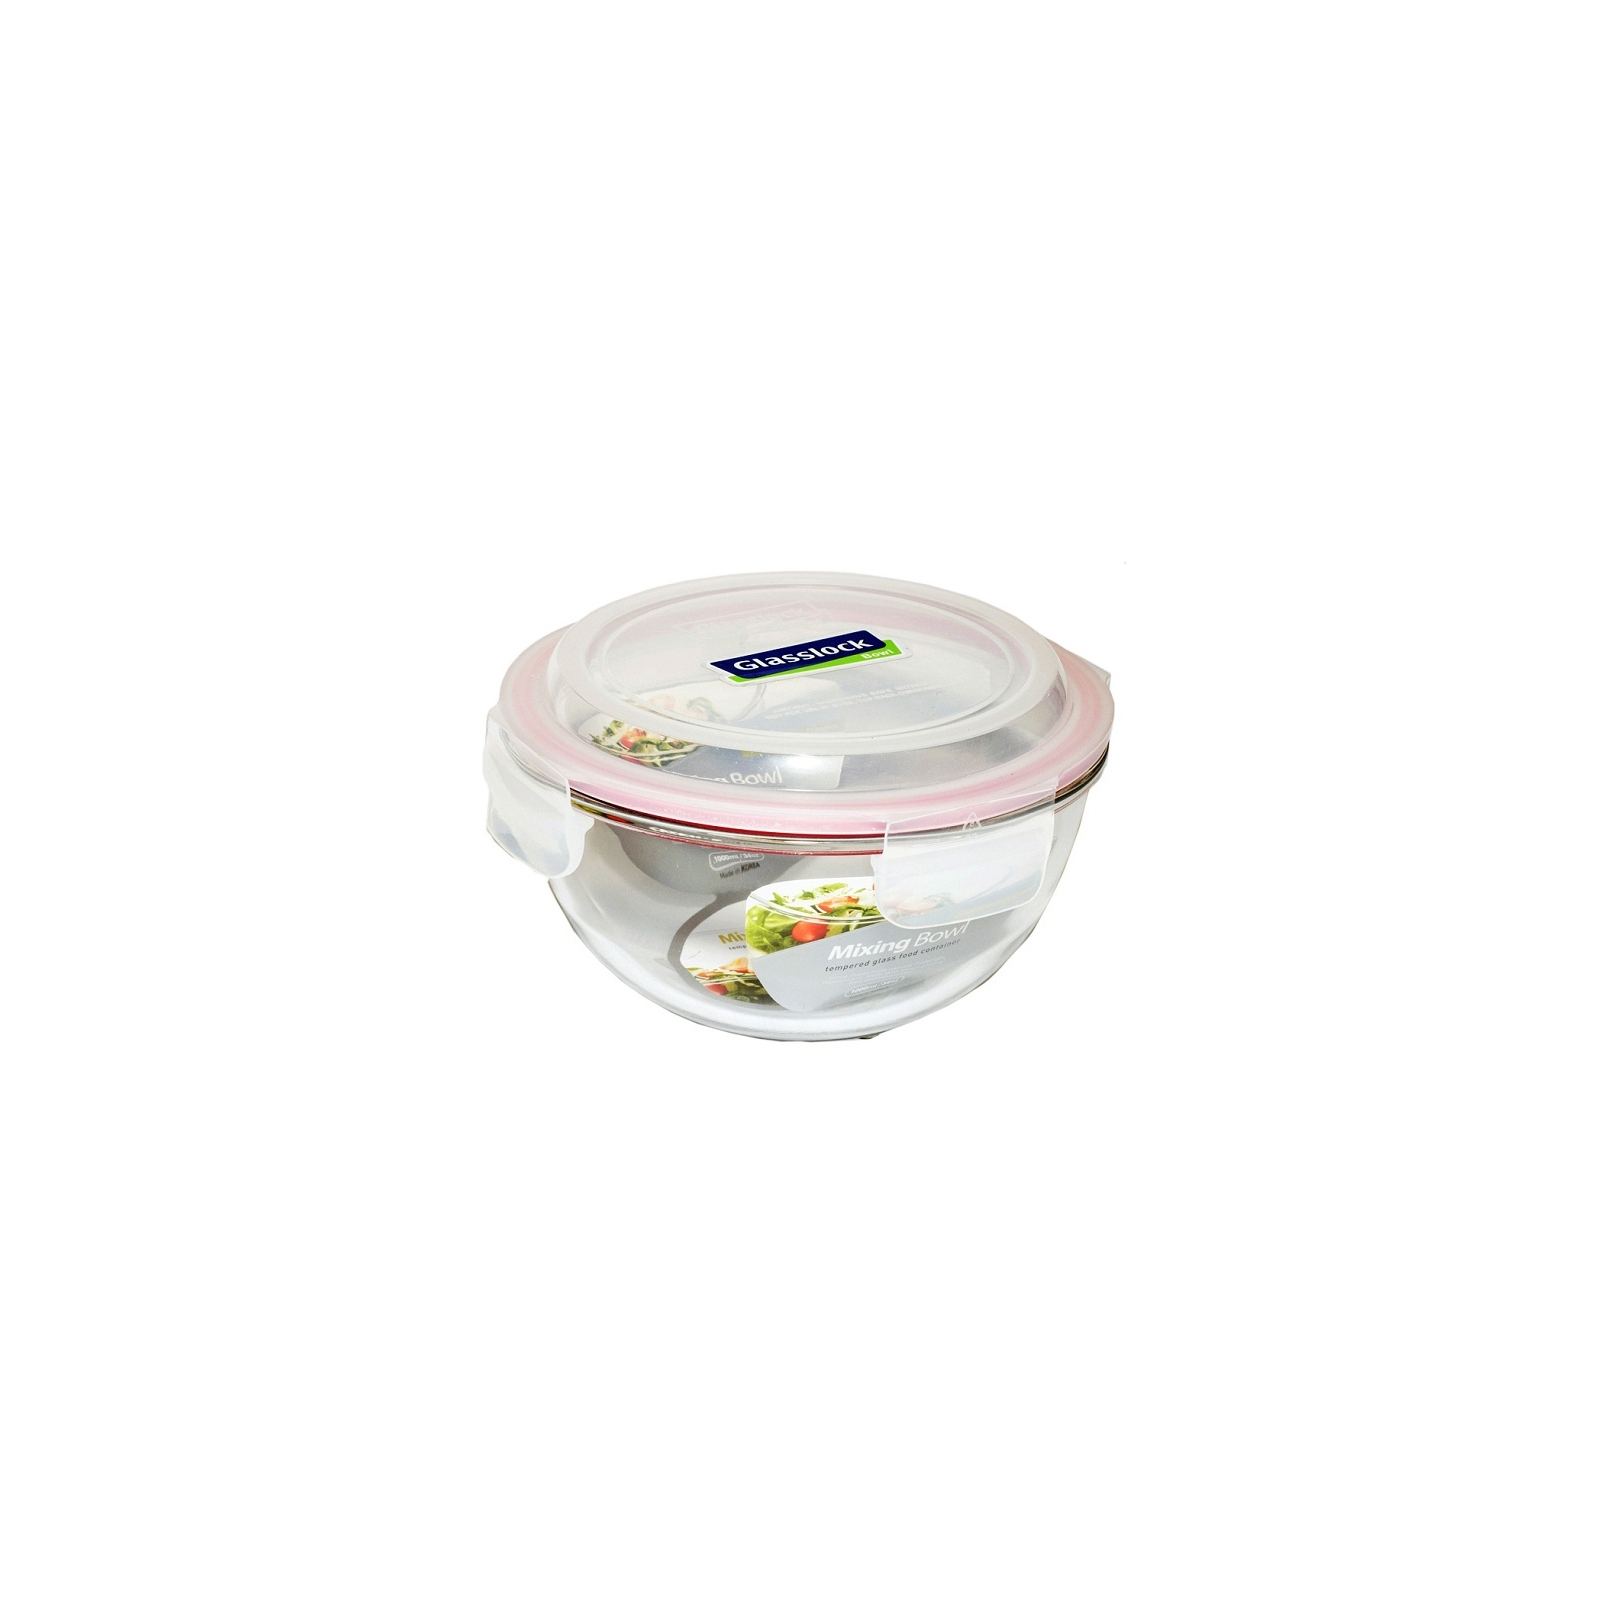 Харчовий контейнер Glasslock кругл. 2,0 л (MBCB-200)